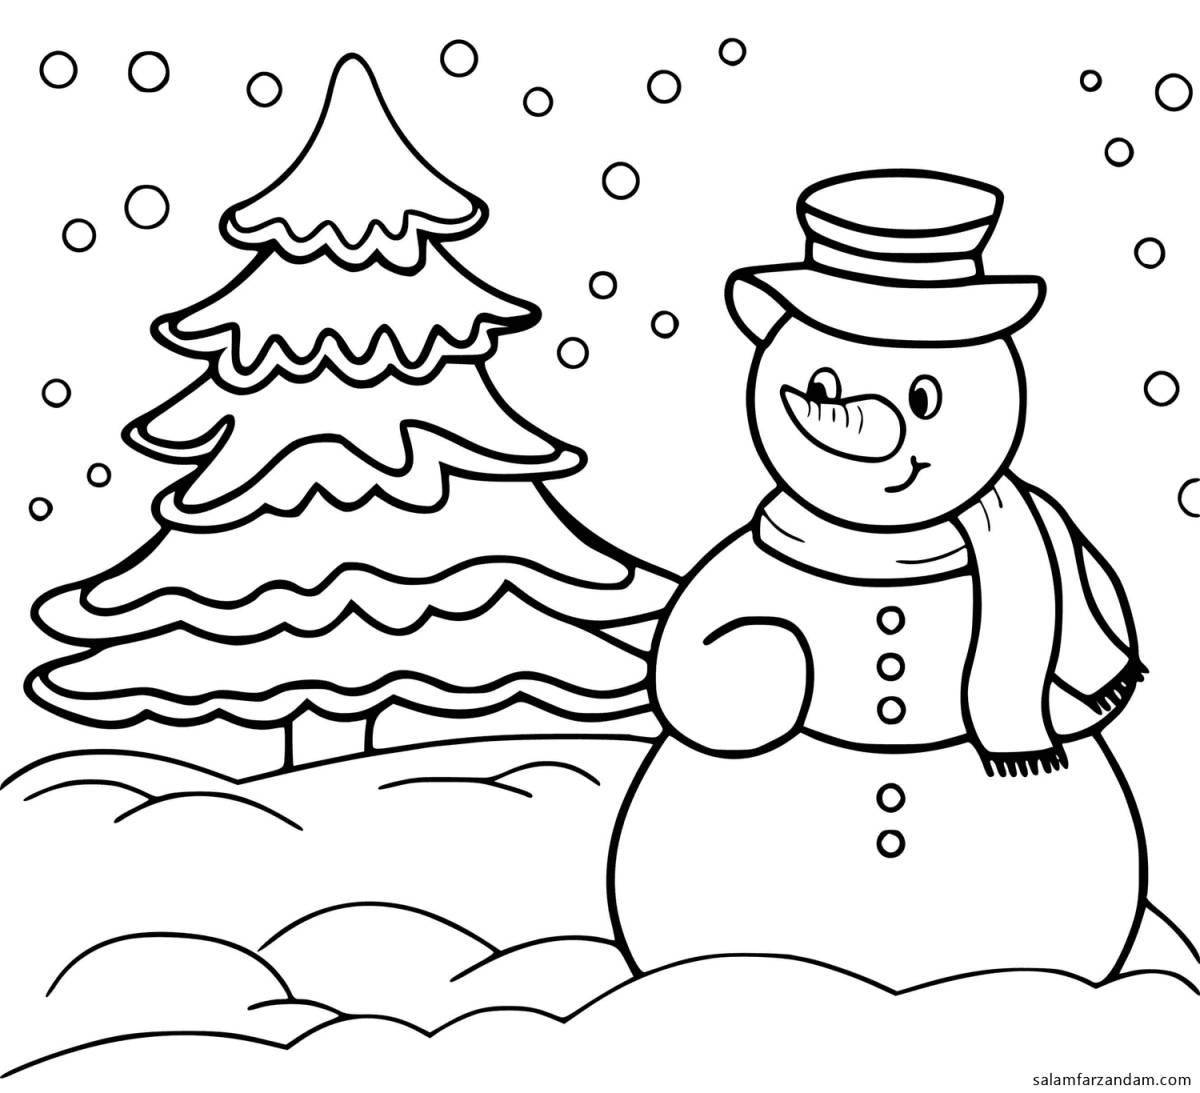 Violent snowman coloring